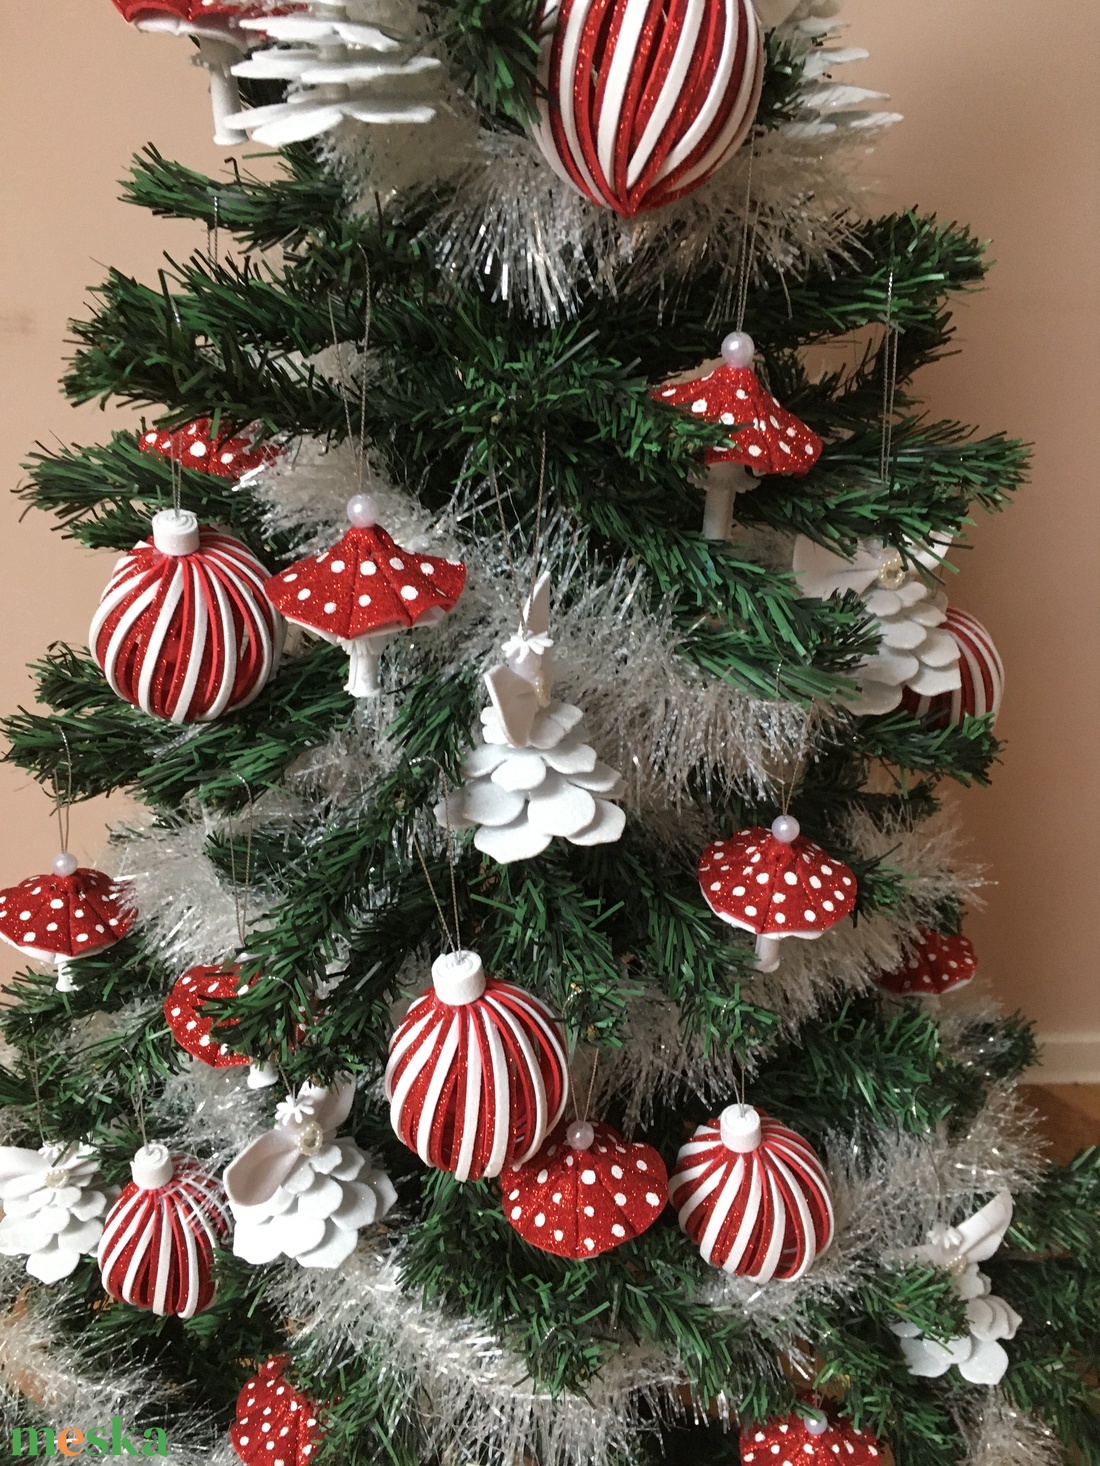 Csillogó karácsonyfadíszek: gomba, angyal, csíkos gömb - karácsony - karácsonyi lakásdekoráció - karácsonyfadíszek - Meska.hu